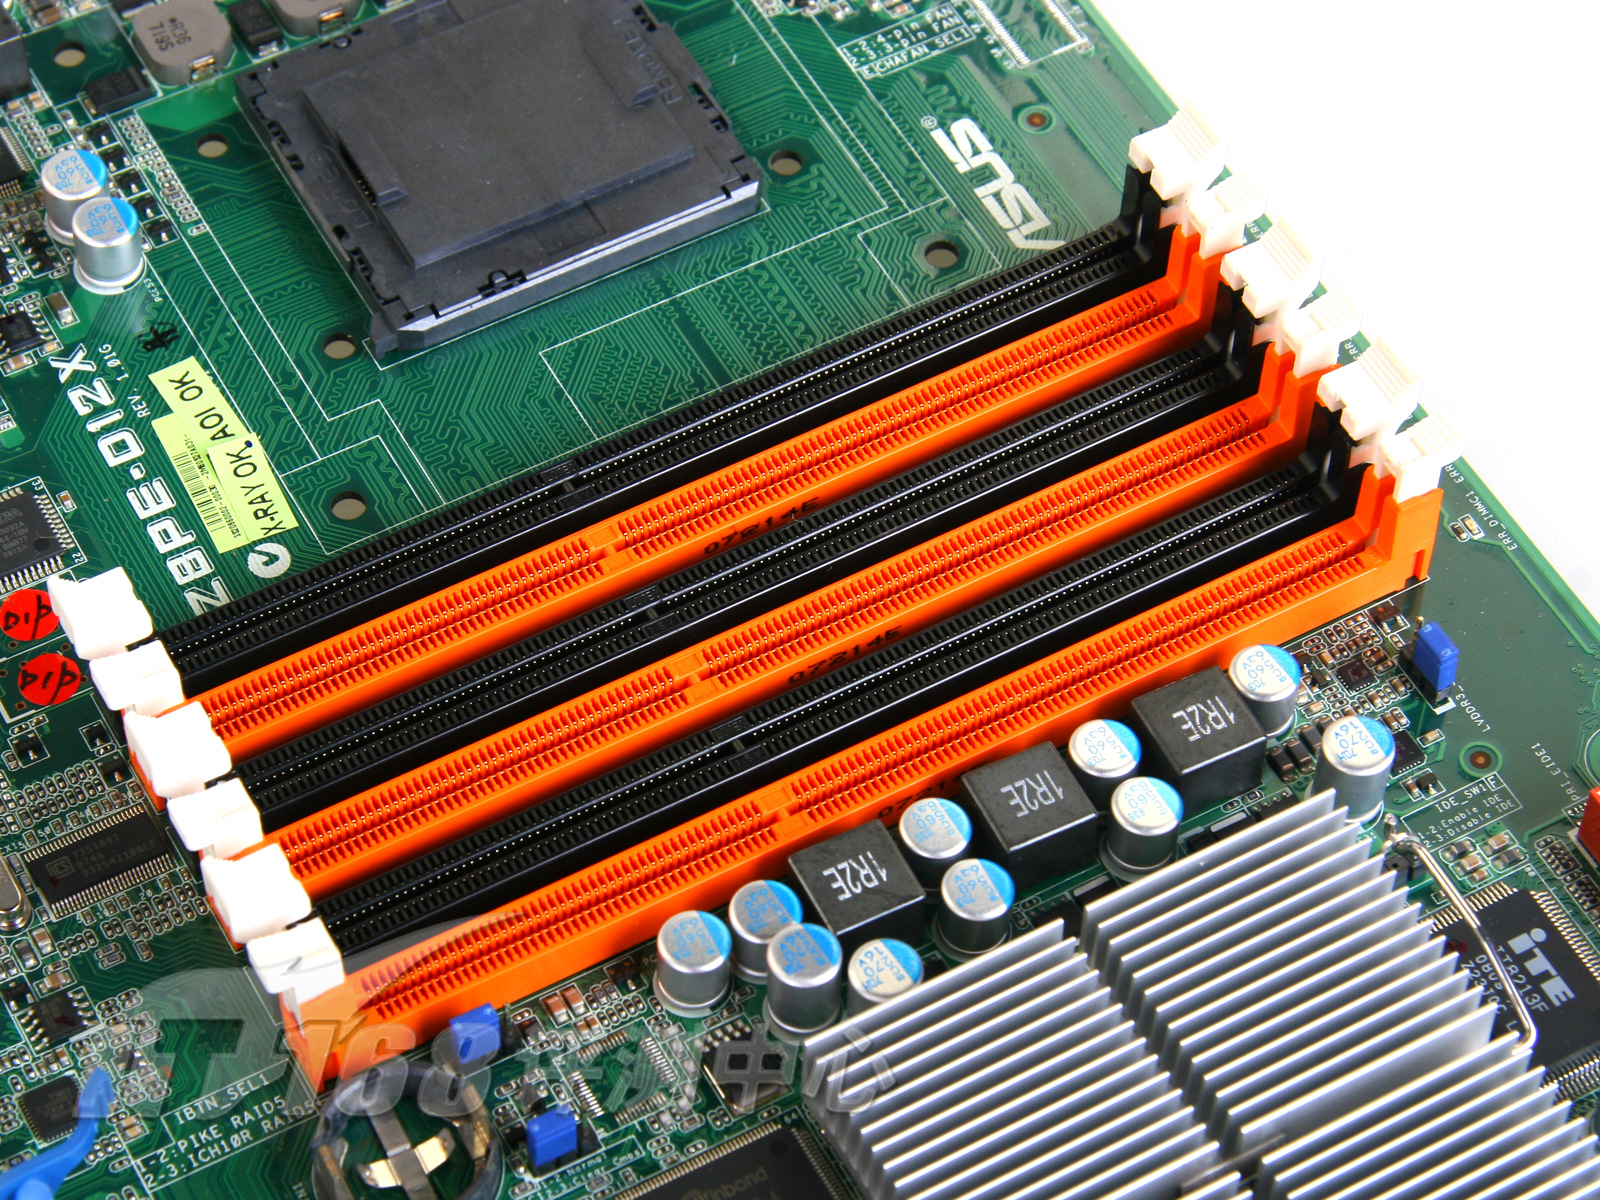 探秘服务器 DDR3 主板：被遗忘的领域如何影响全球和平稳定  第5张